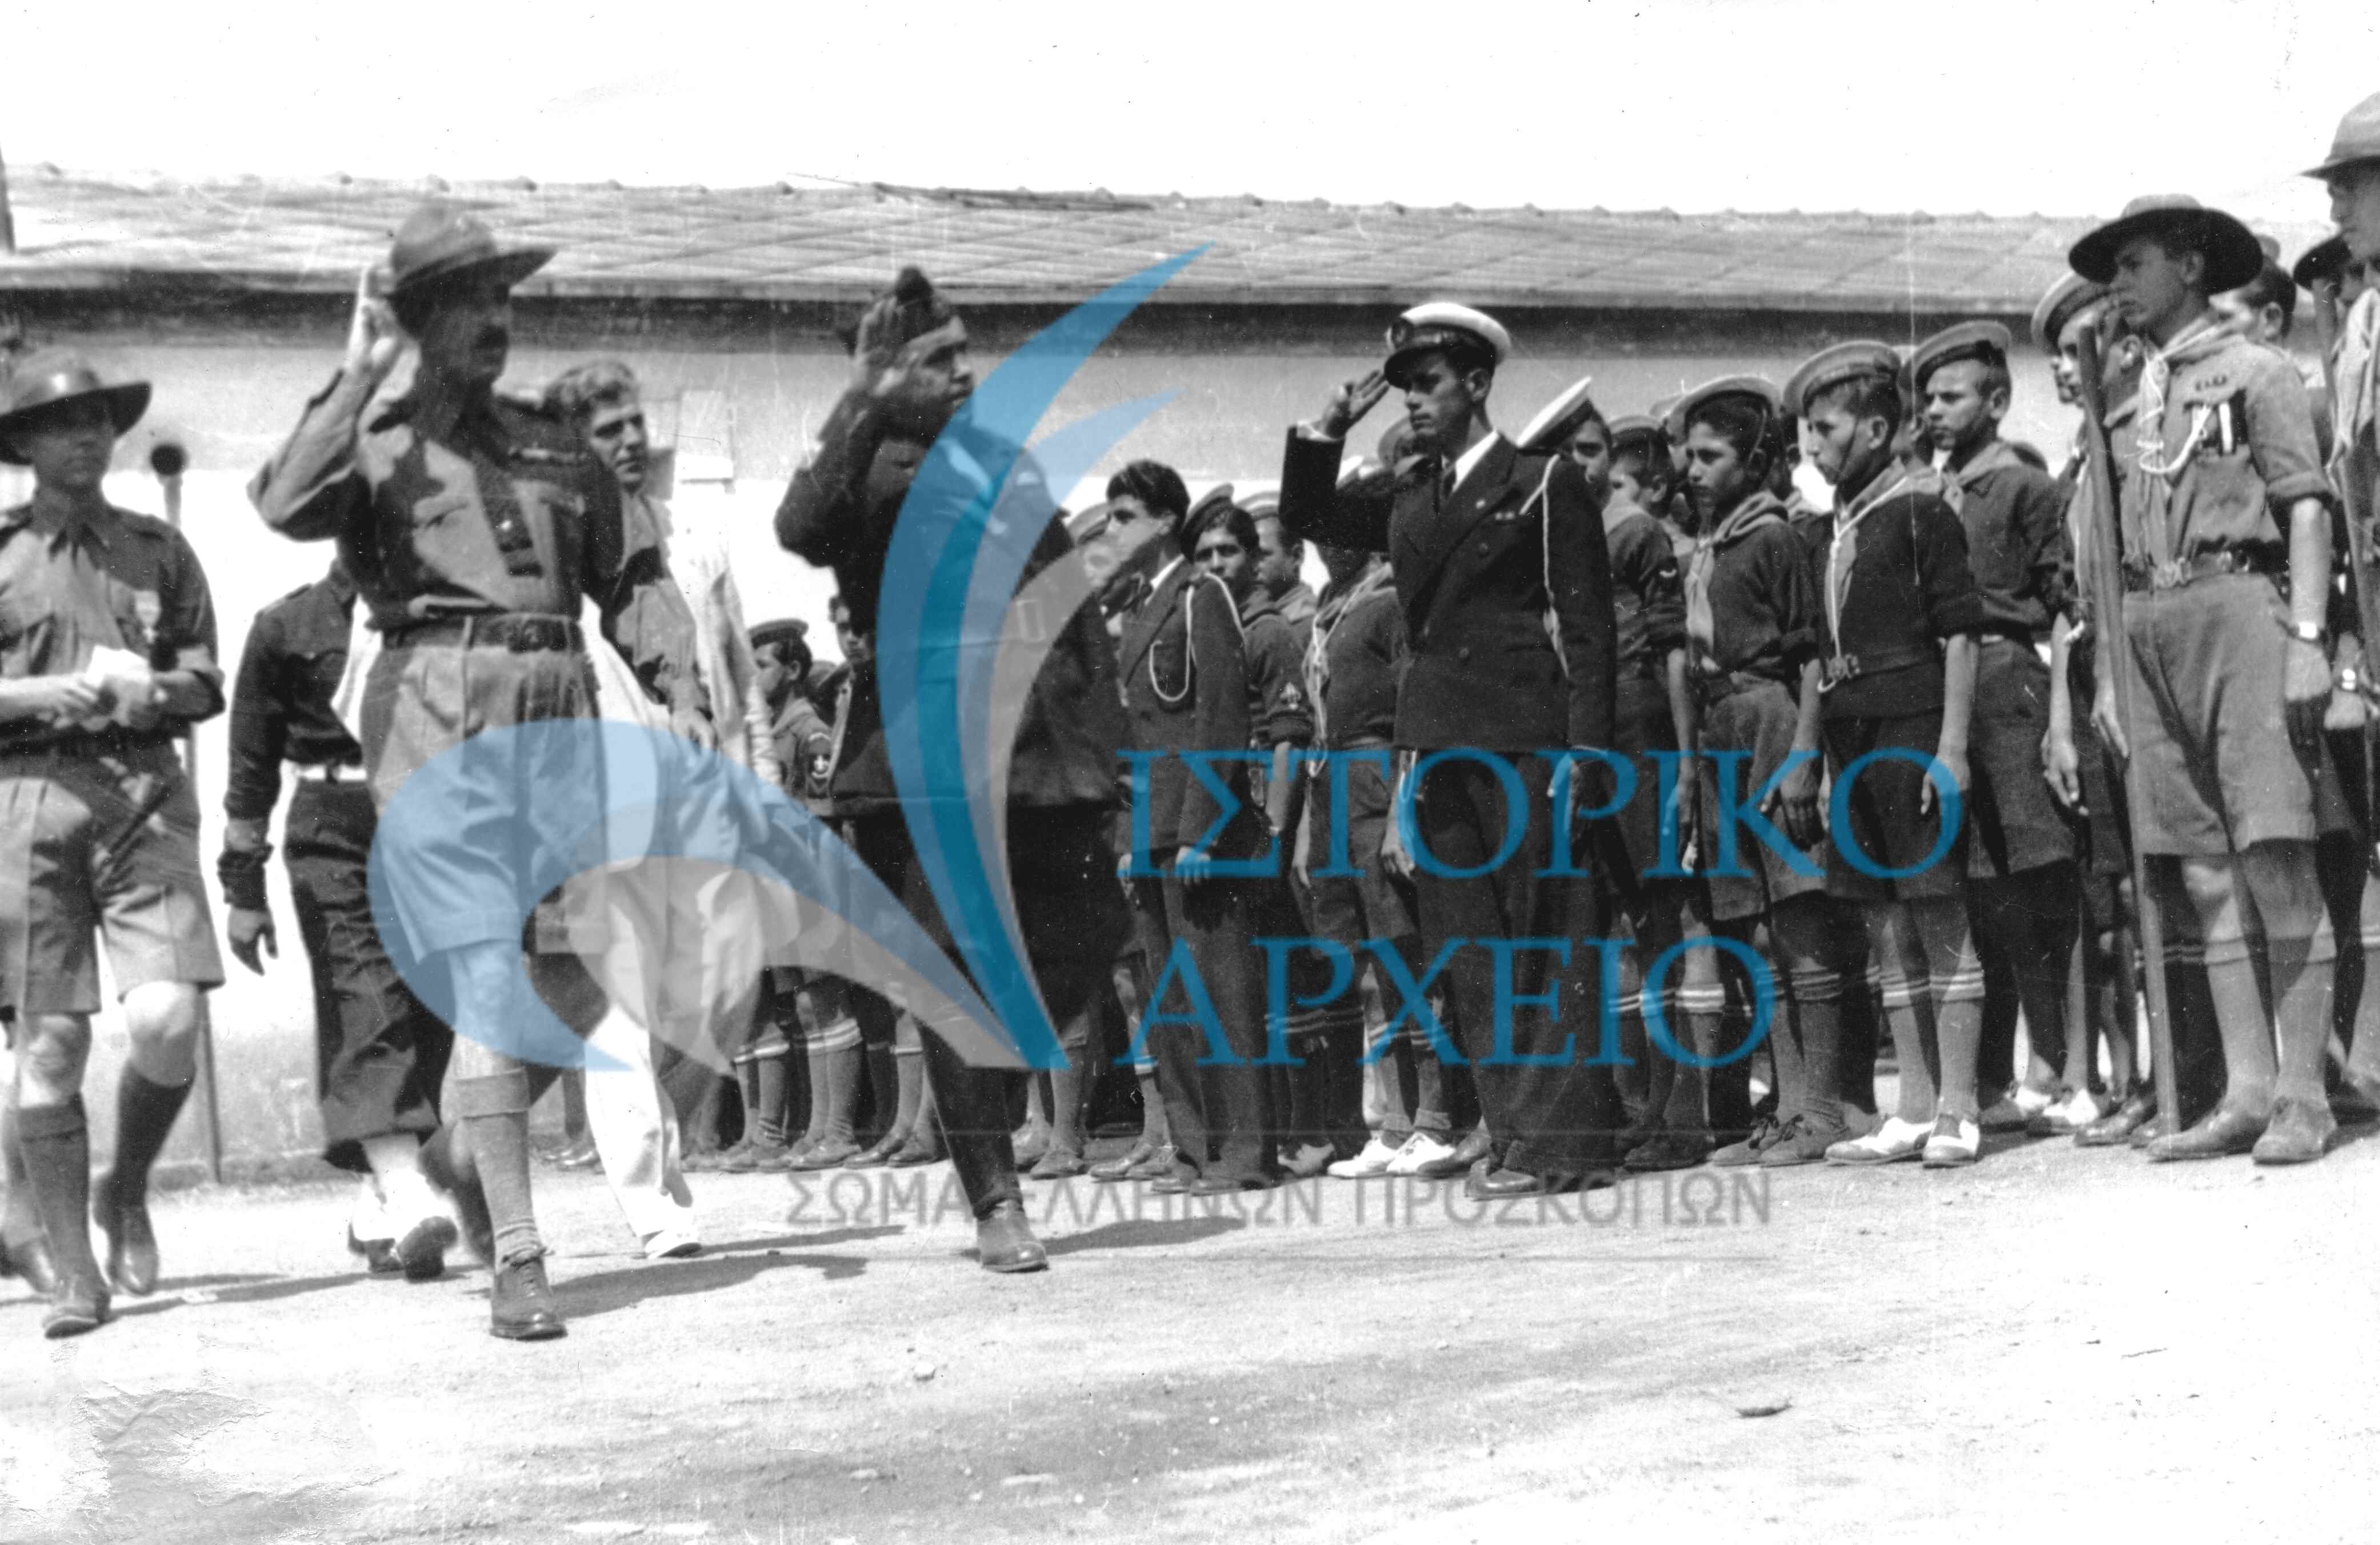 Από την τελετή διάλυσης των Προσκόπων της Θεσσαλονίκης και την αναγκαστική συγχώνευση στην Εθνική Οργάνωση Νεολαίας (ΕΟΝ) το 1939.